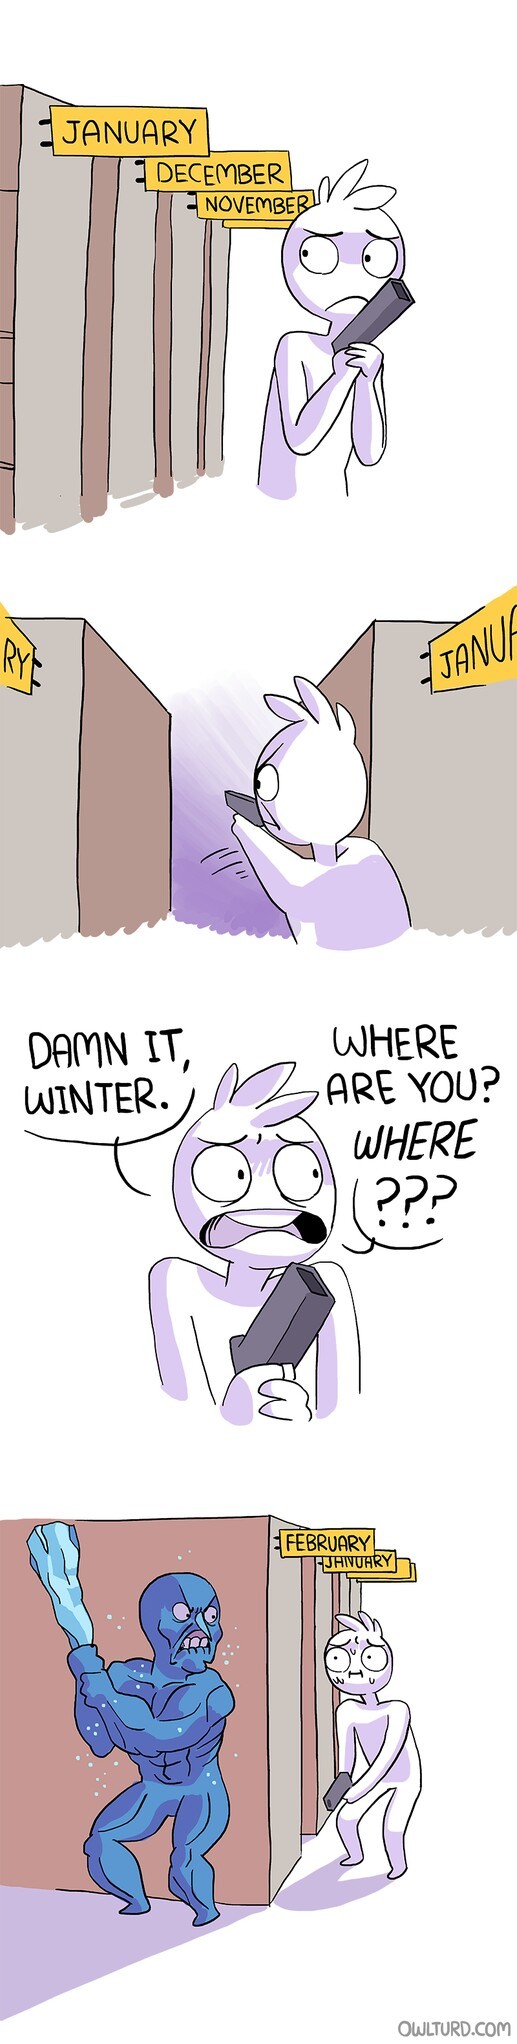 Damn winter! - meme